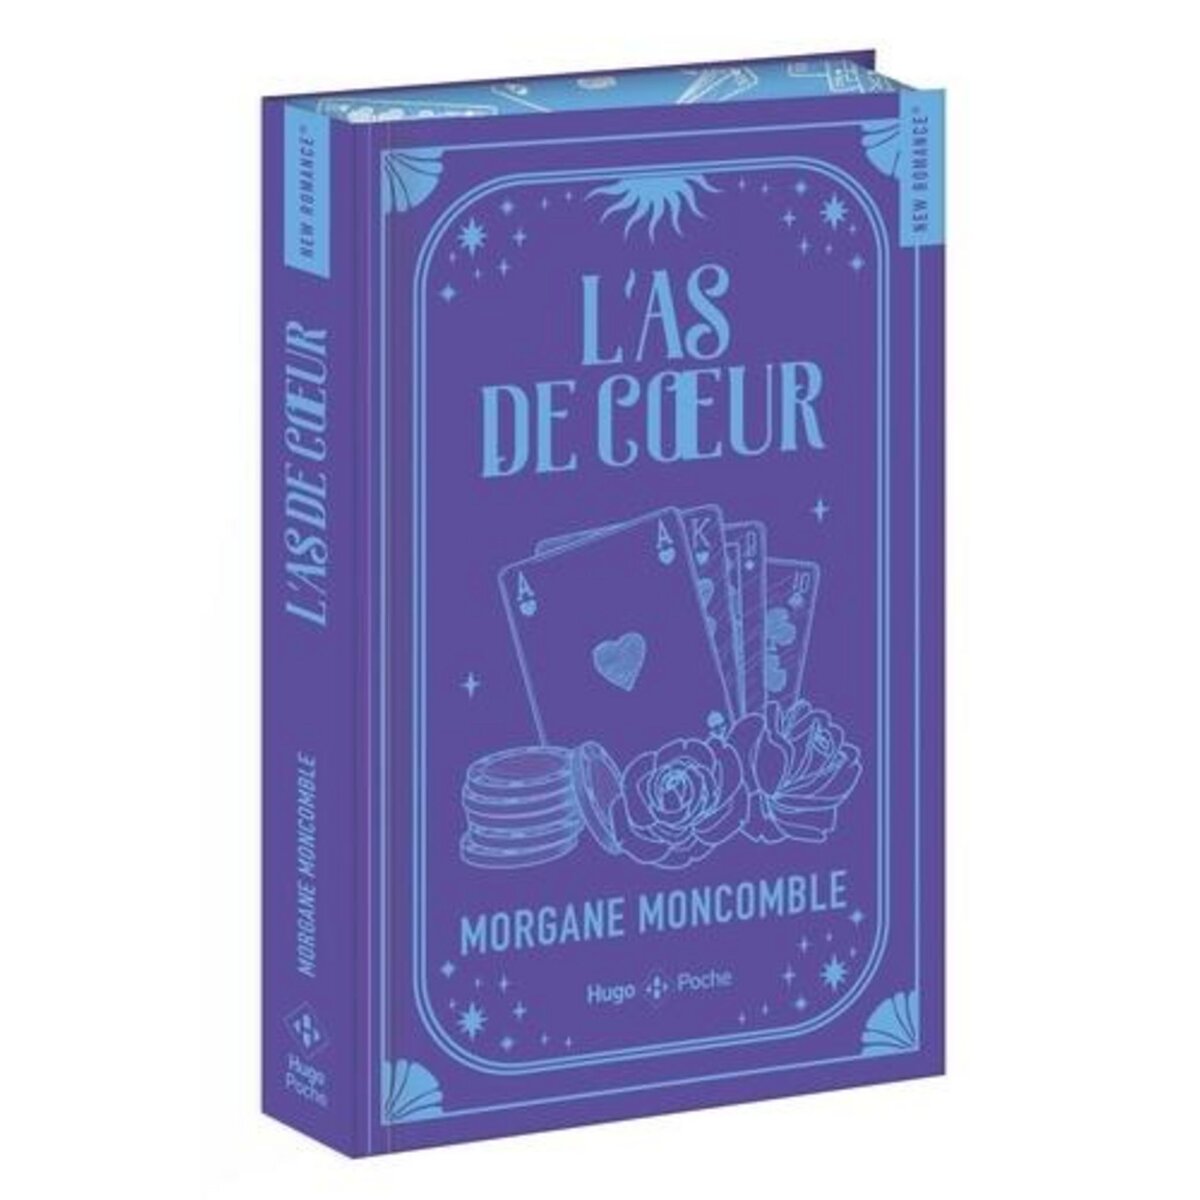  L'AS DE COEUR. EDITION COLLECTOR, Moncomble Morgane